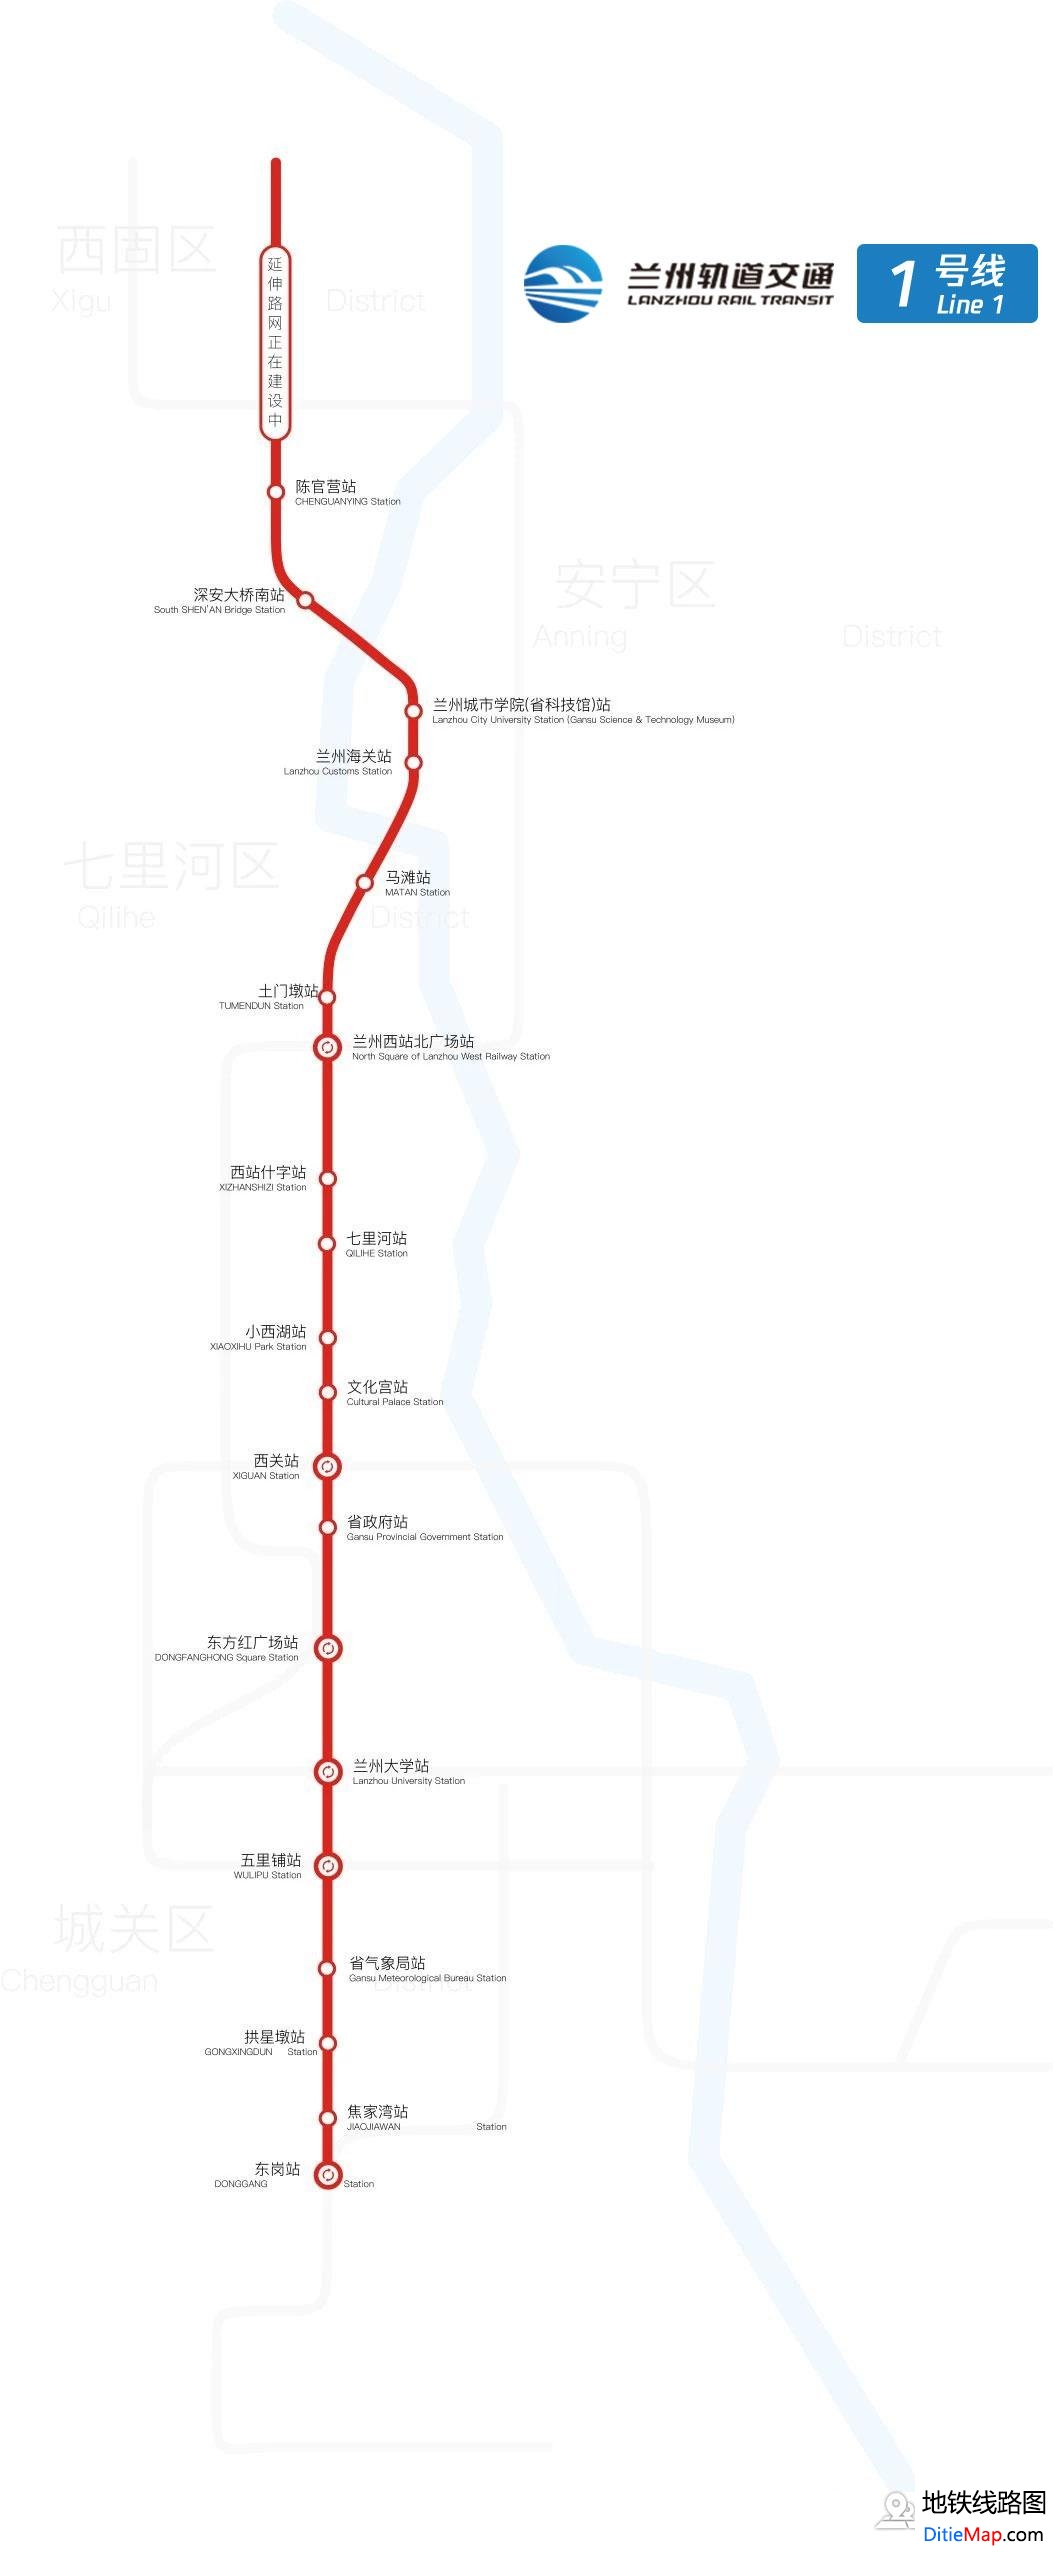 兰州地铁1号线线路图 运营时间票价站点 查询下载 兰州地铁1号线查询 兰州地铁1号线运营时间 兰州地铁1号线线路图 兰州地铁1号线 兰州地铁一号线 兰州地铁线路图  第2张